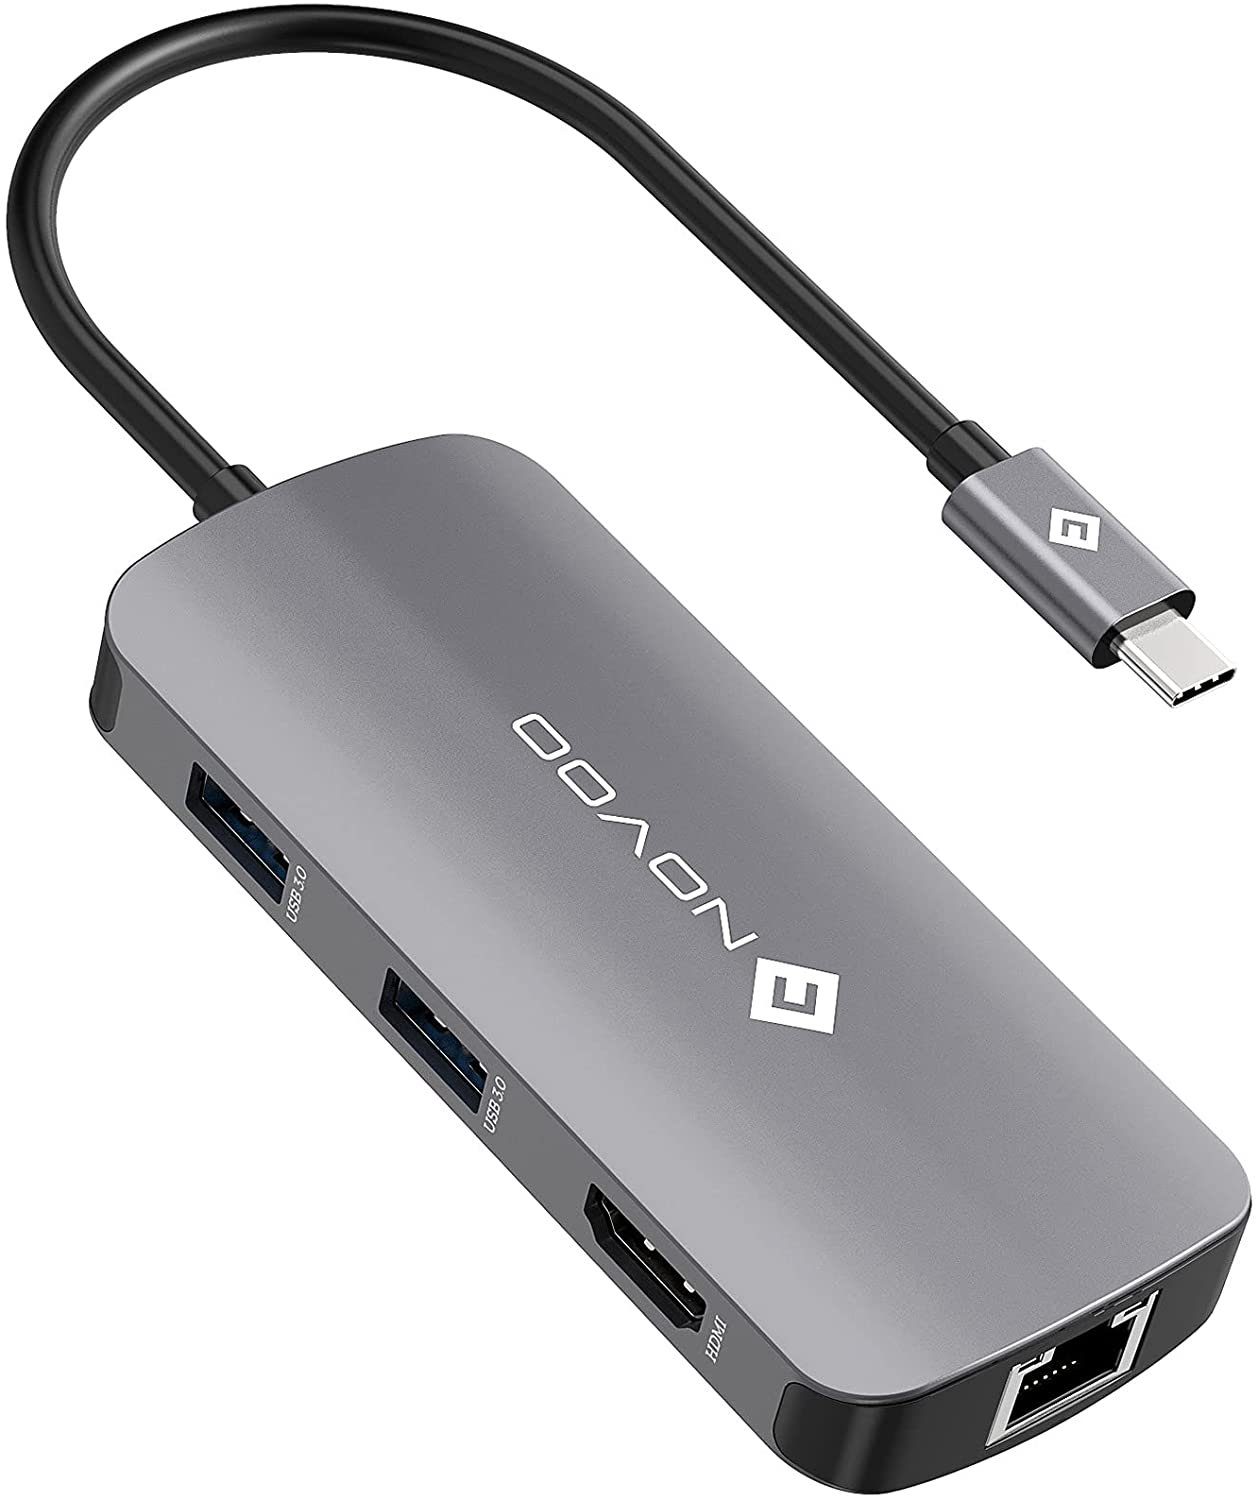 NOVOO 7 in 1 Adapter für technische Geräte, Anschlusserweiterung für den PC  USB-Adapter USB-C zu HDMI, USB-C Power Delivery, 3xUSB 3.0, USB 2.0 Mini-B,  RJ45, Kompatibel mit Windows Laptop, Tablet, MacBook &